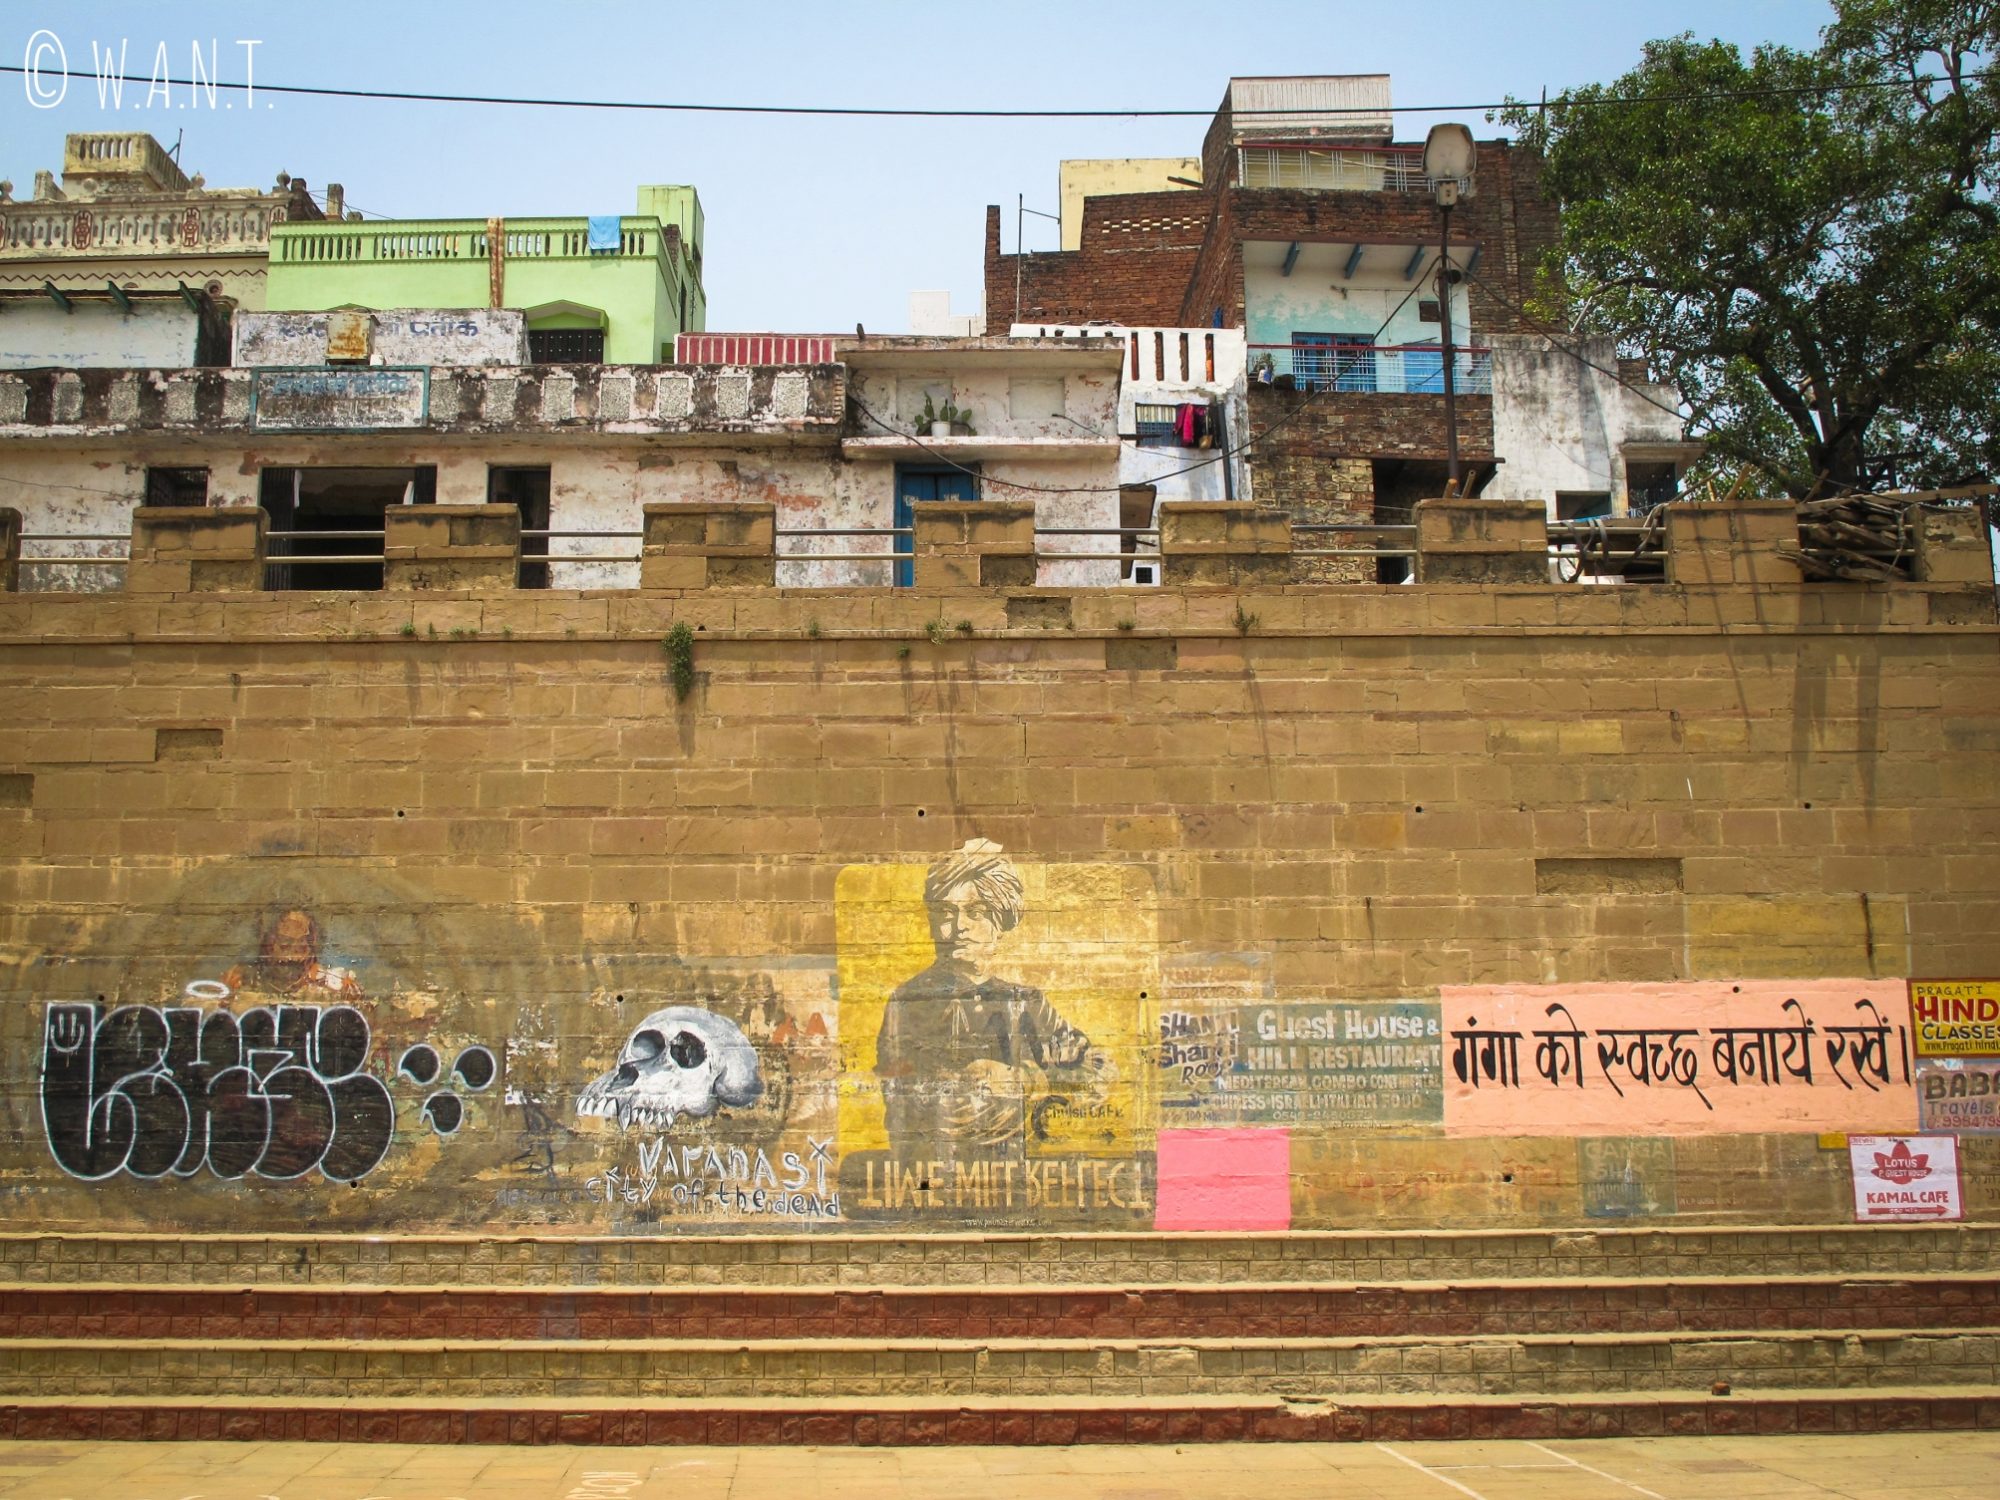 L'art de rue est très présent sur les façades des ghats de Varanasi, notamment au Kedar ghat